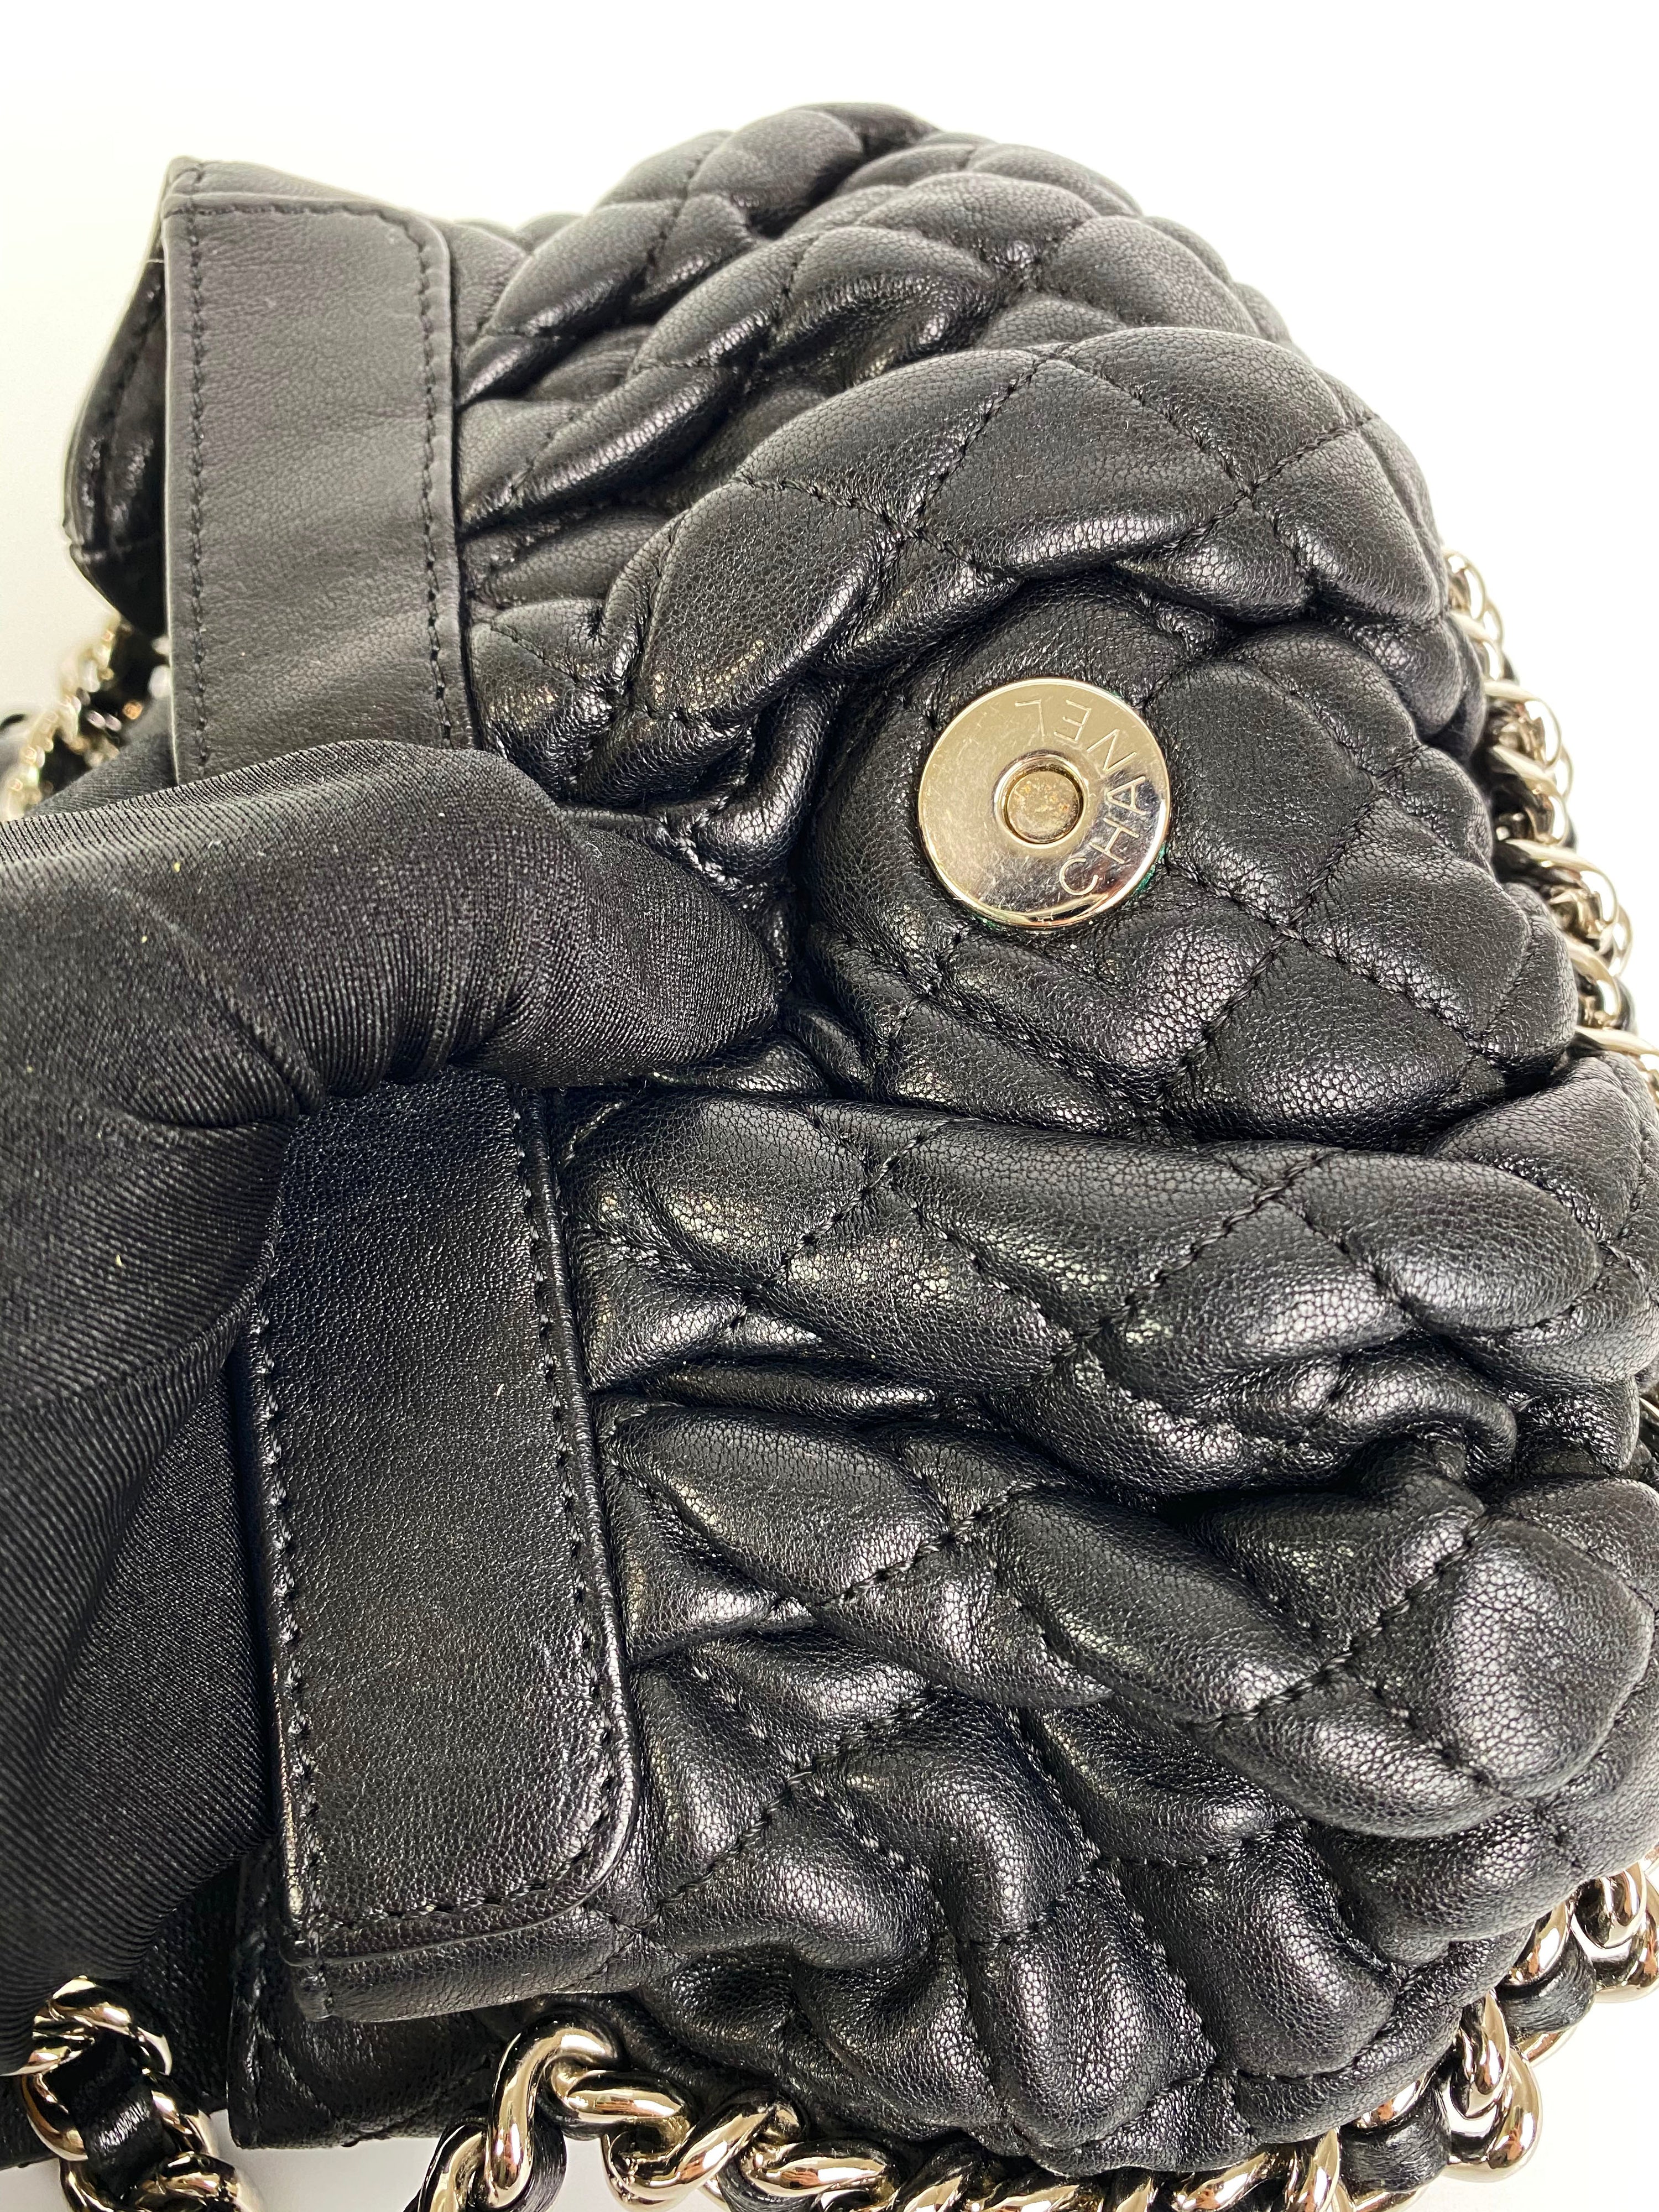 Chanel Vintage Black Chain Around Bag